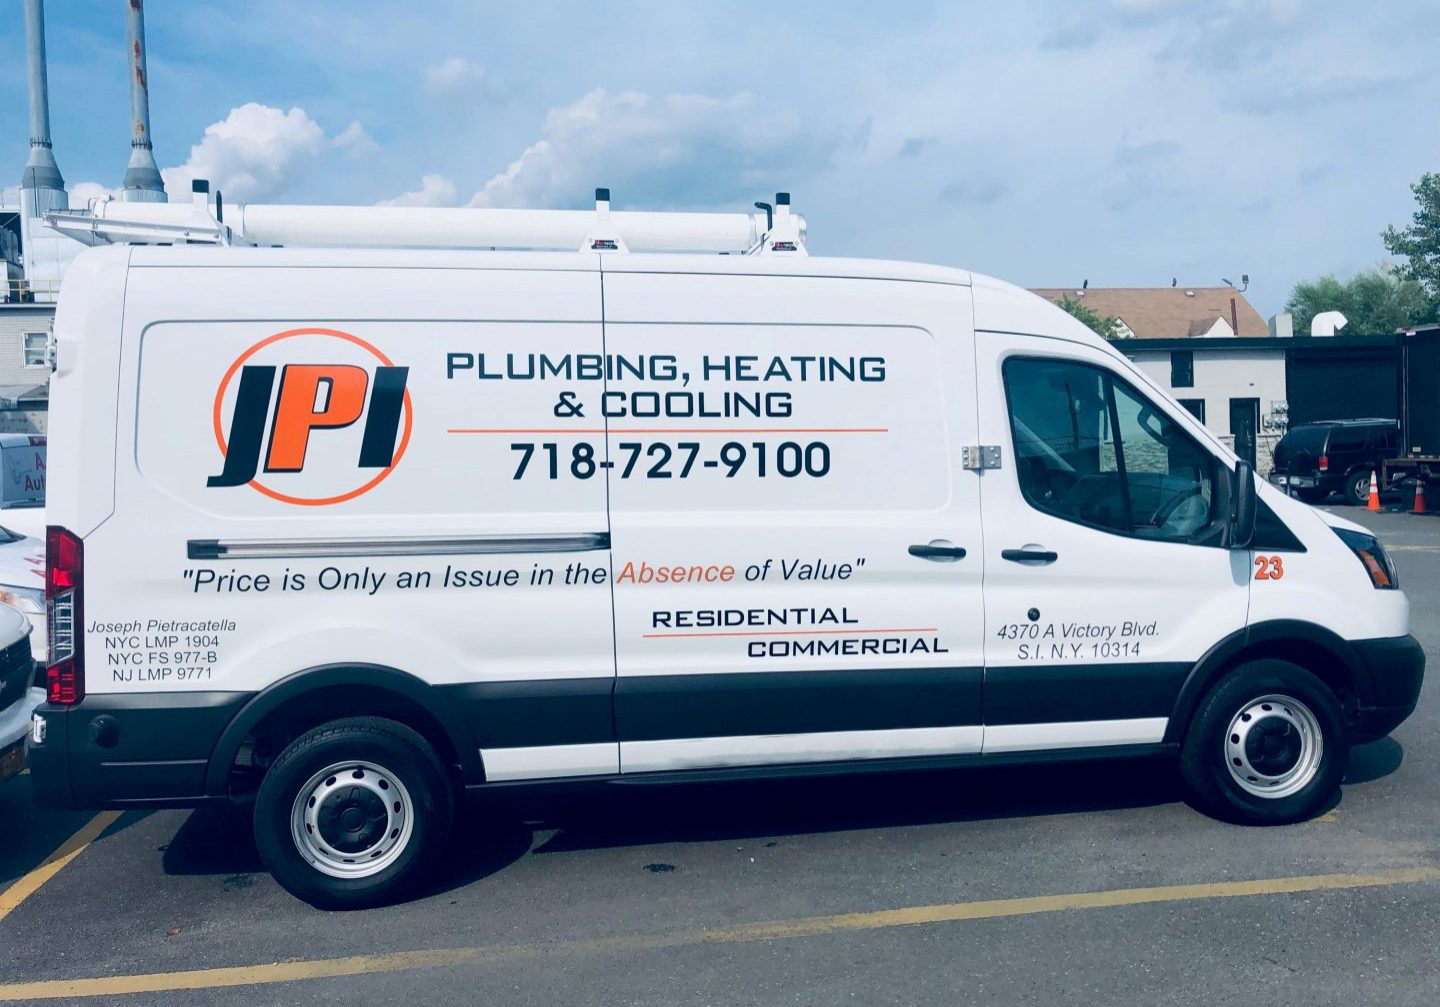 JPI Plumbing and Heating, Inc